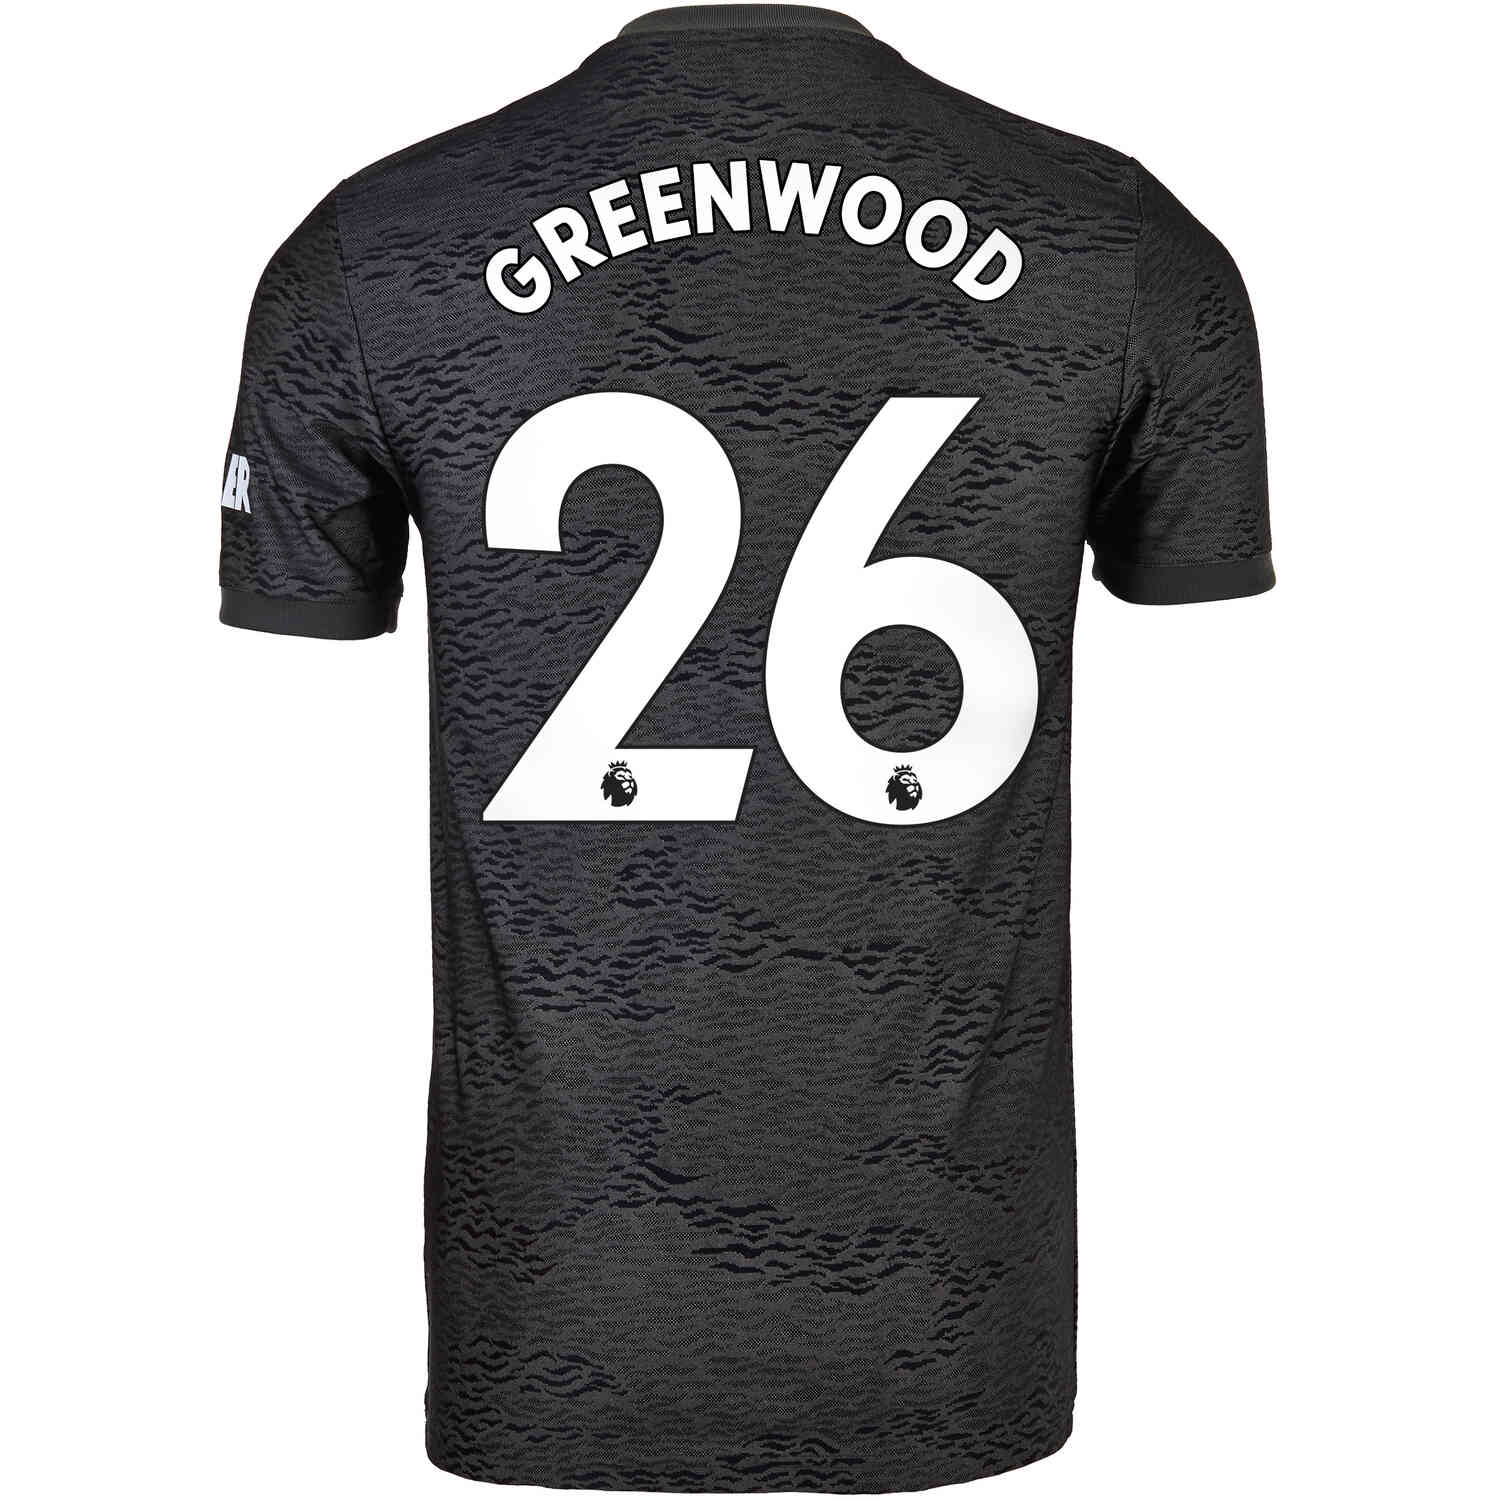 mason greenwood jersey